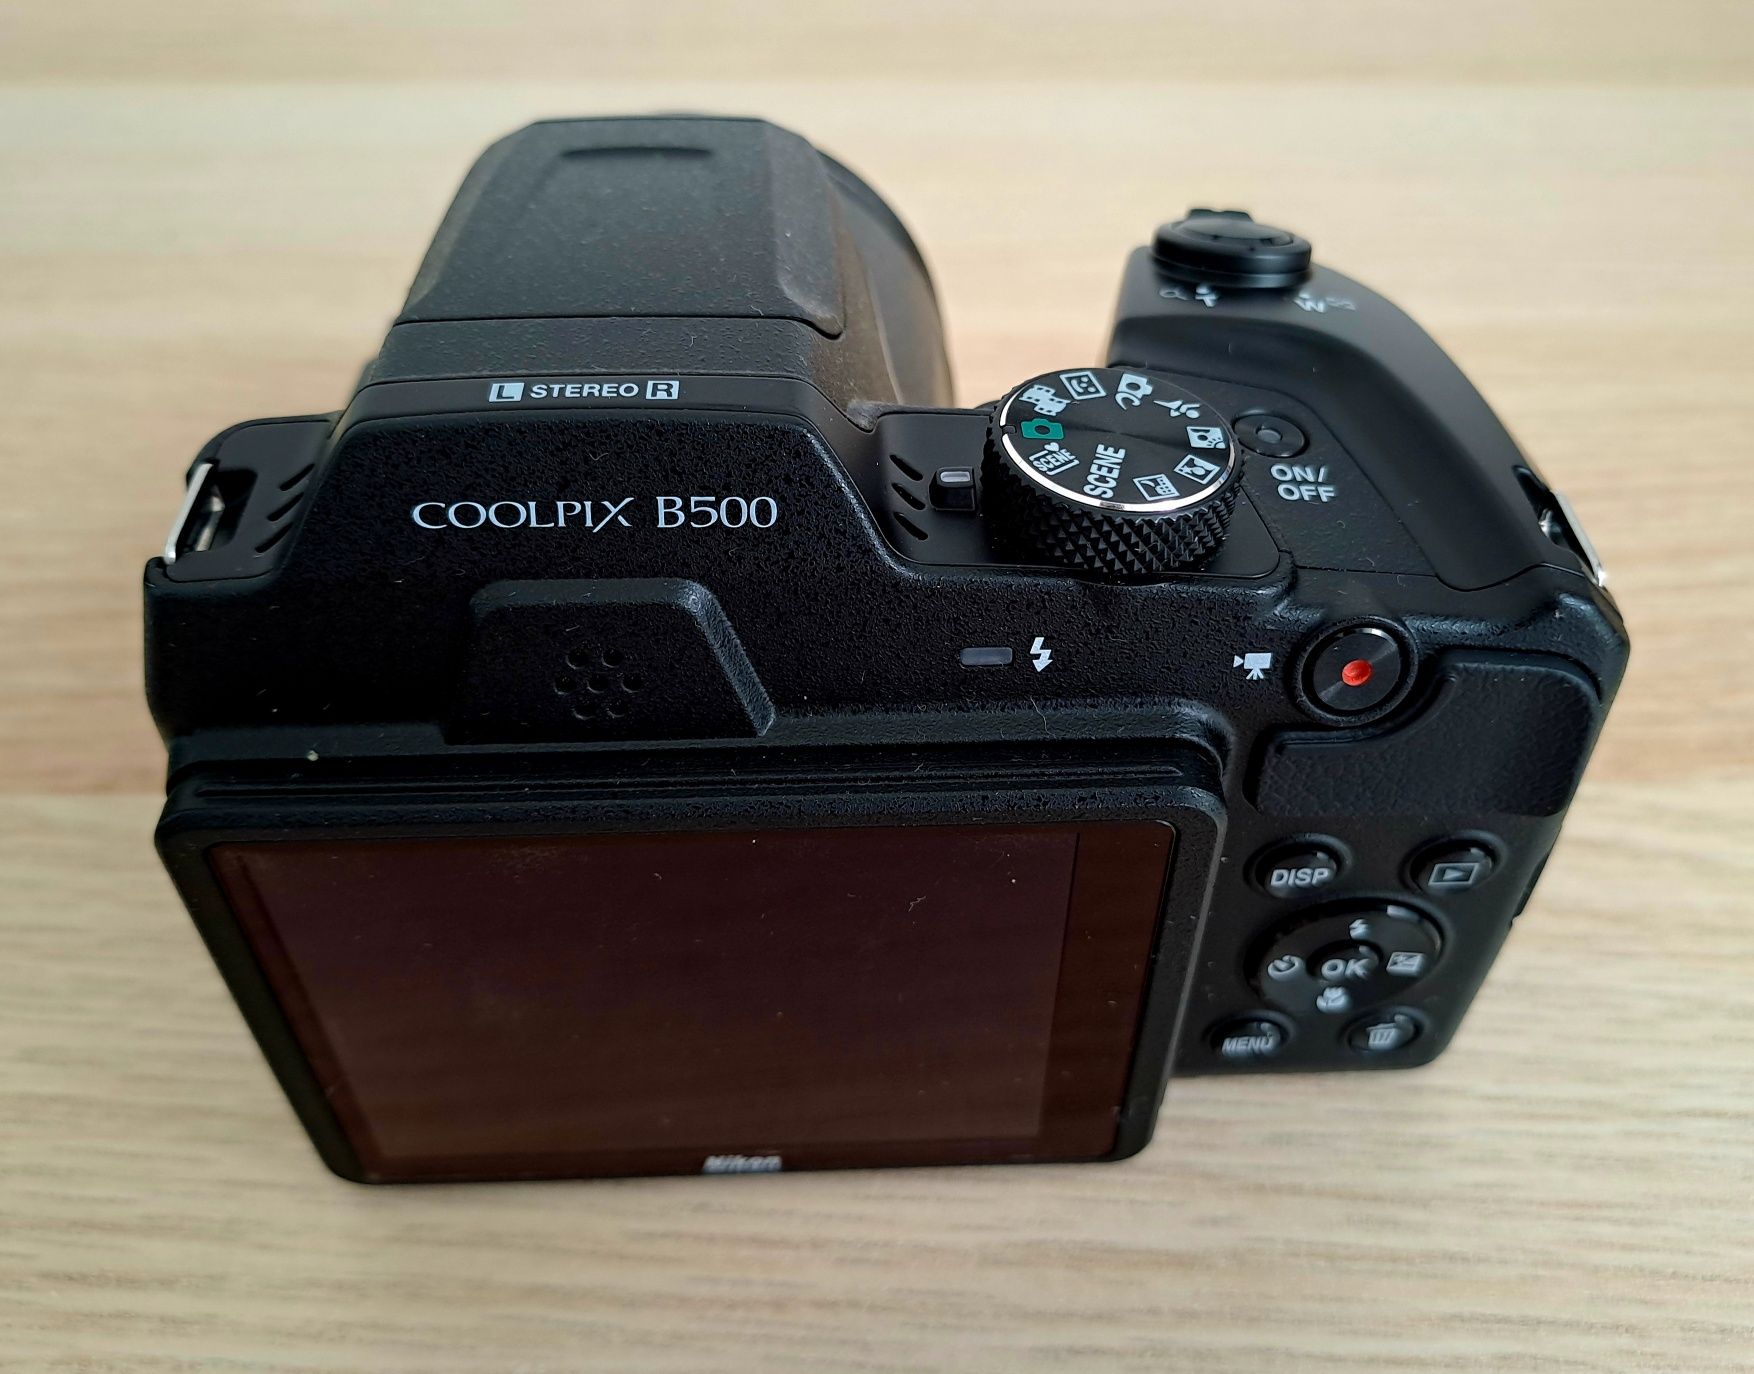 Aparat Nikon coolpix b500